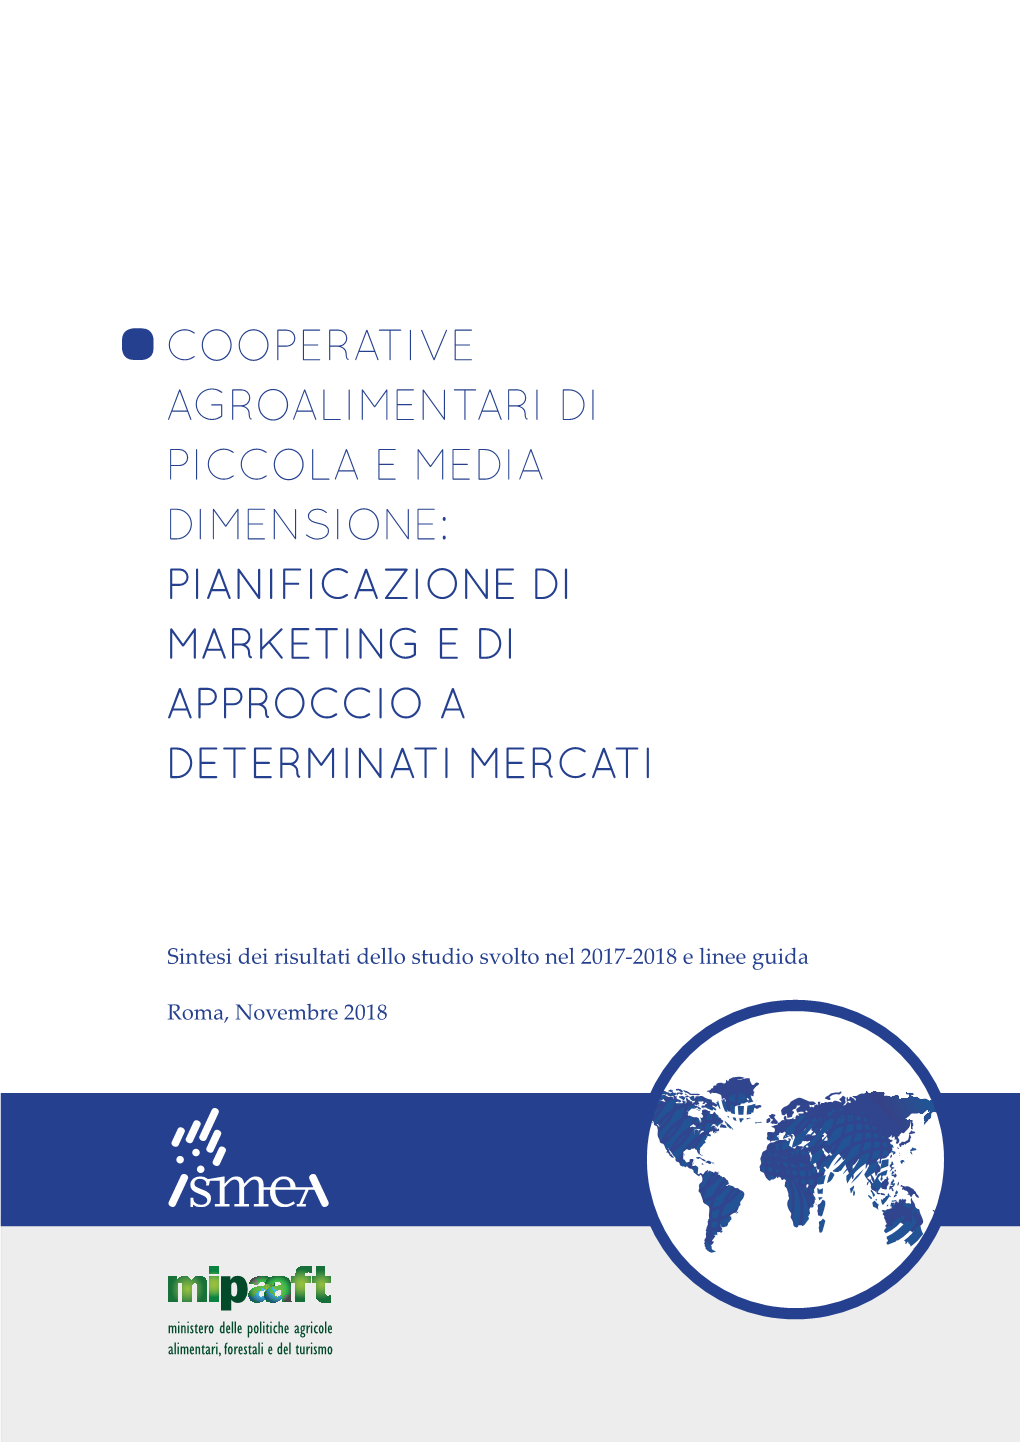 Cooperative Agroalimentari Di Piccola E Media Dimensione: Pianificazione Di Marketing E Di Approccio a Determinati Mercati